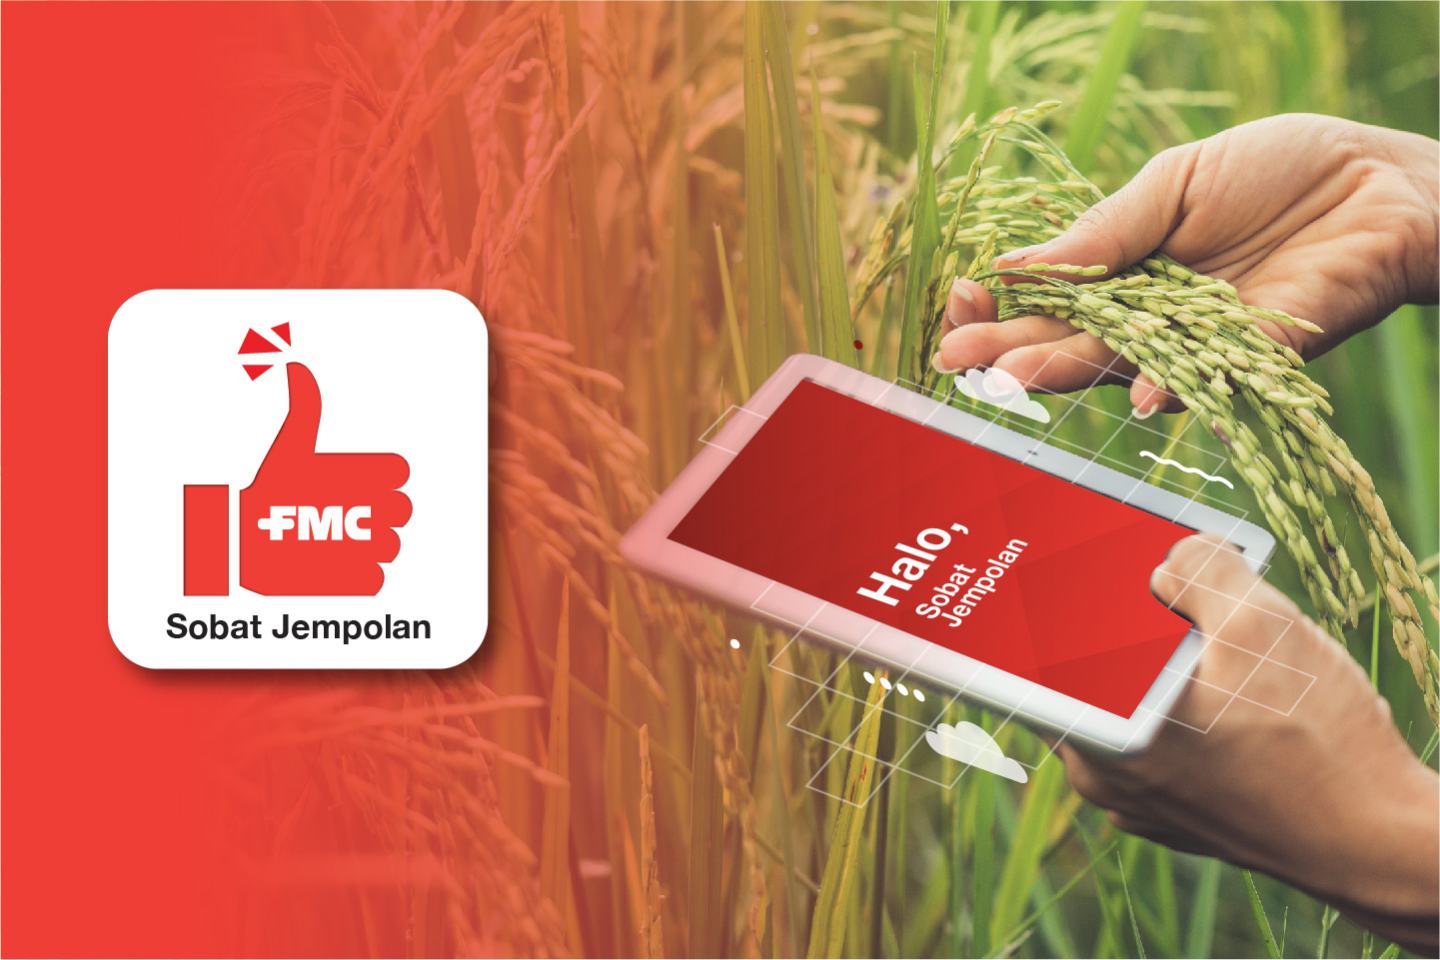 Sobat jempolan farmers app